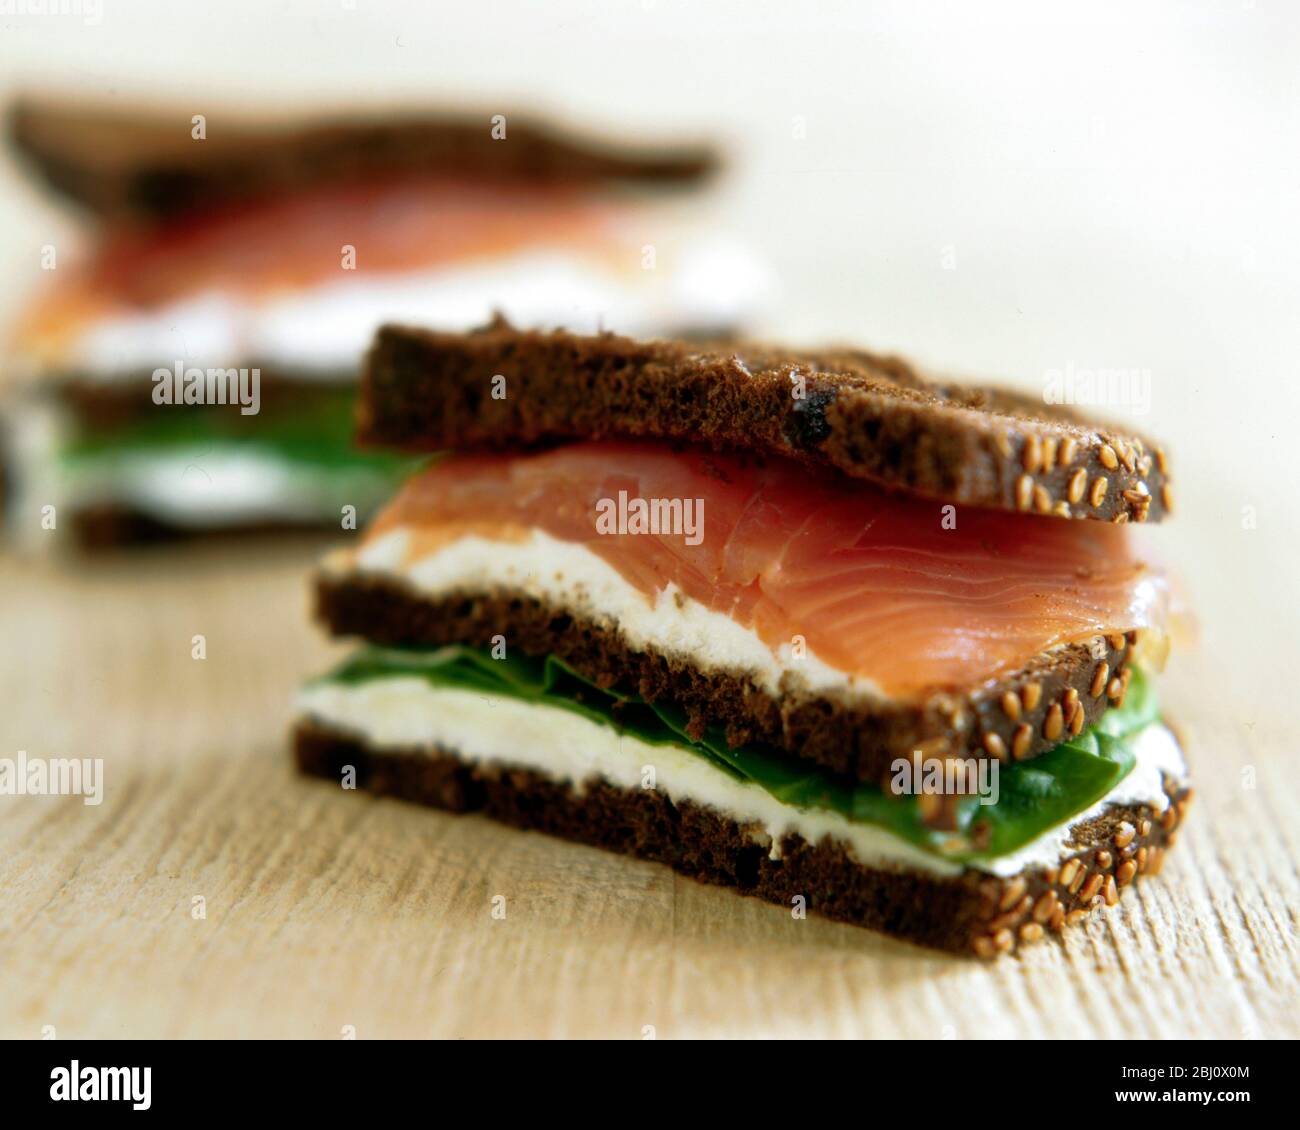 Geräuchertes Lachs- und Frischkäse-Sandwich auf dunklem Roggenbrot - Stockfoto